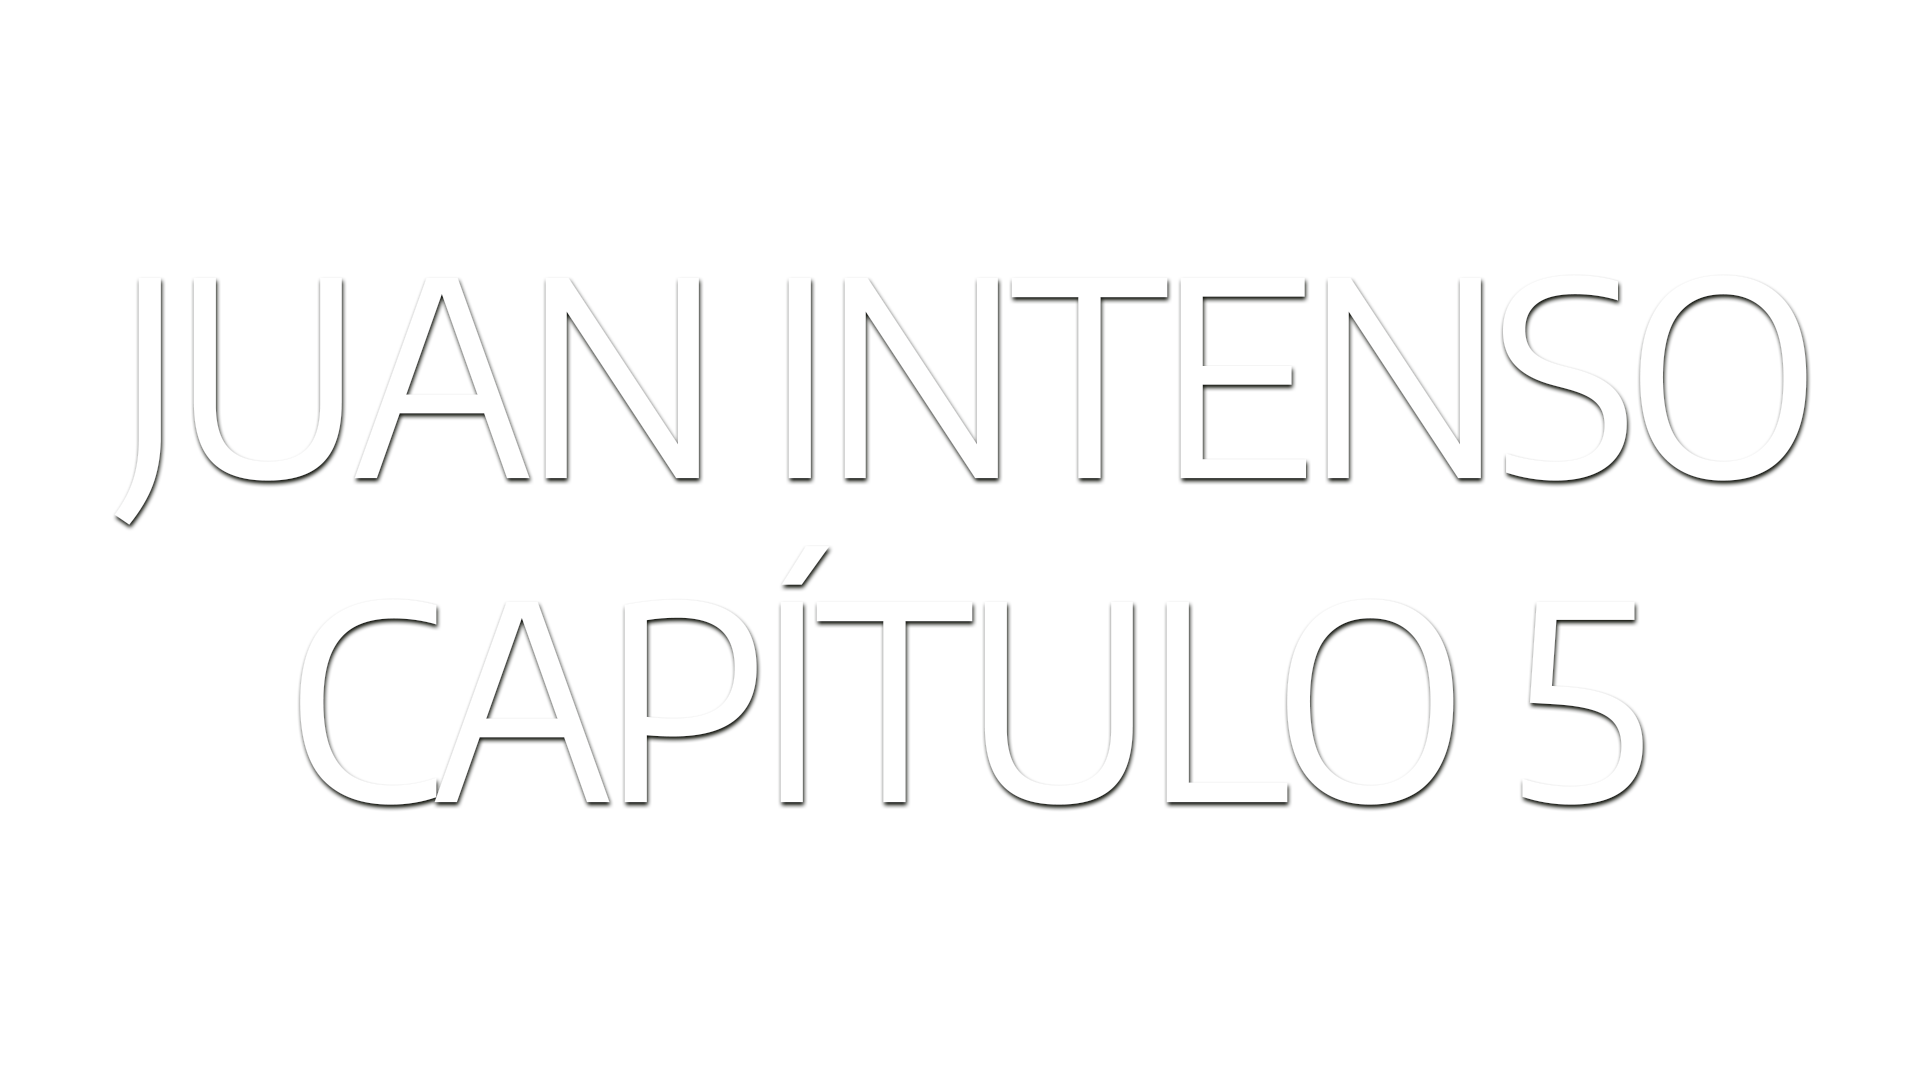 Juan Intenso – Ep 5